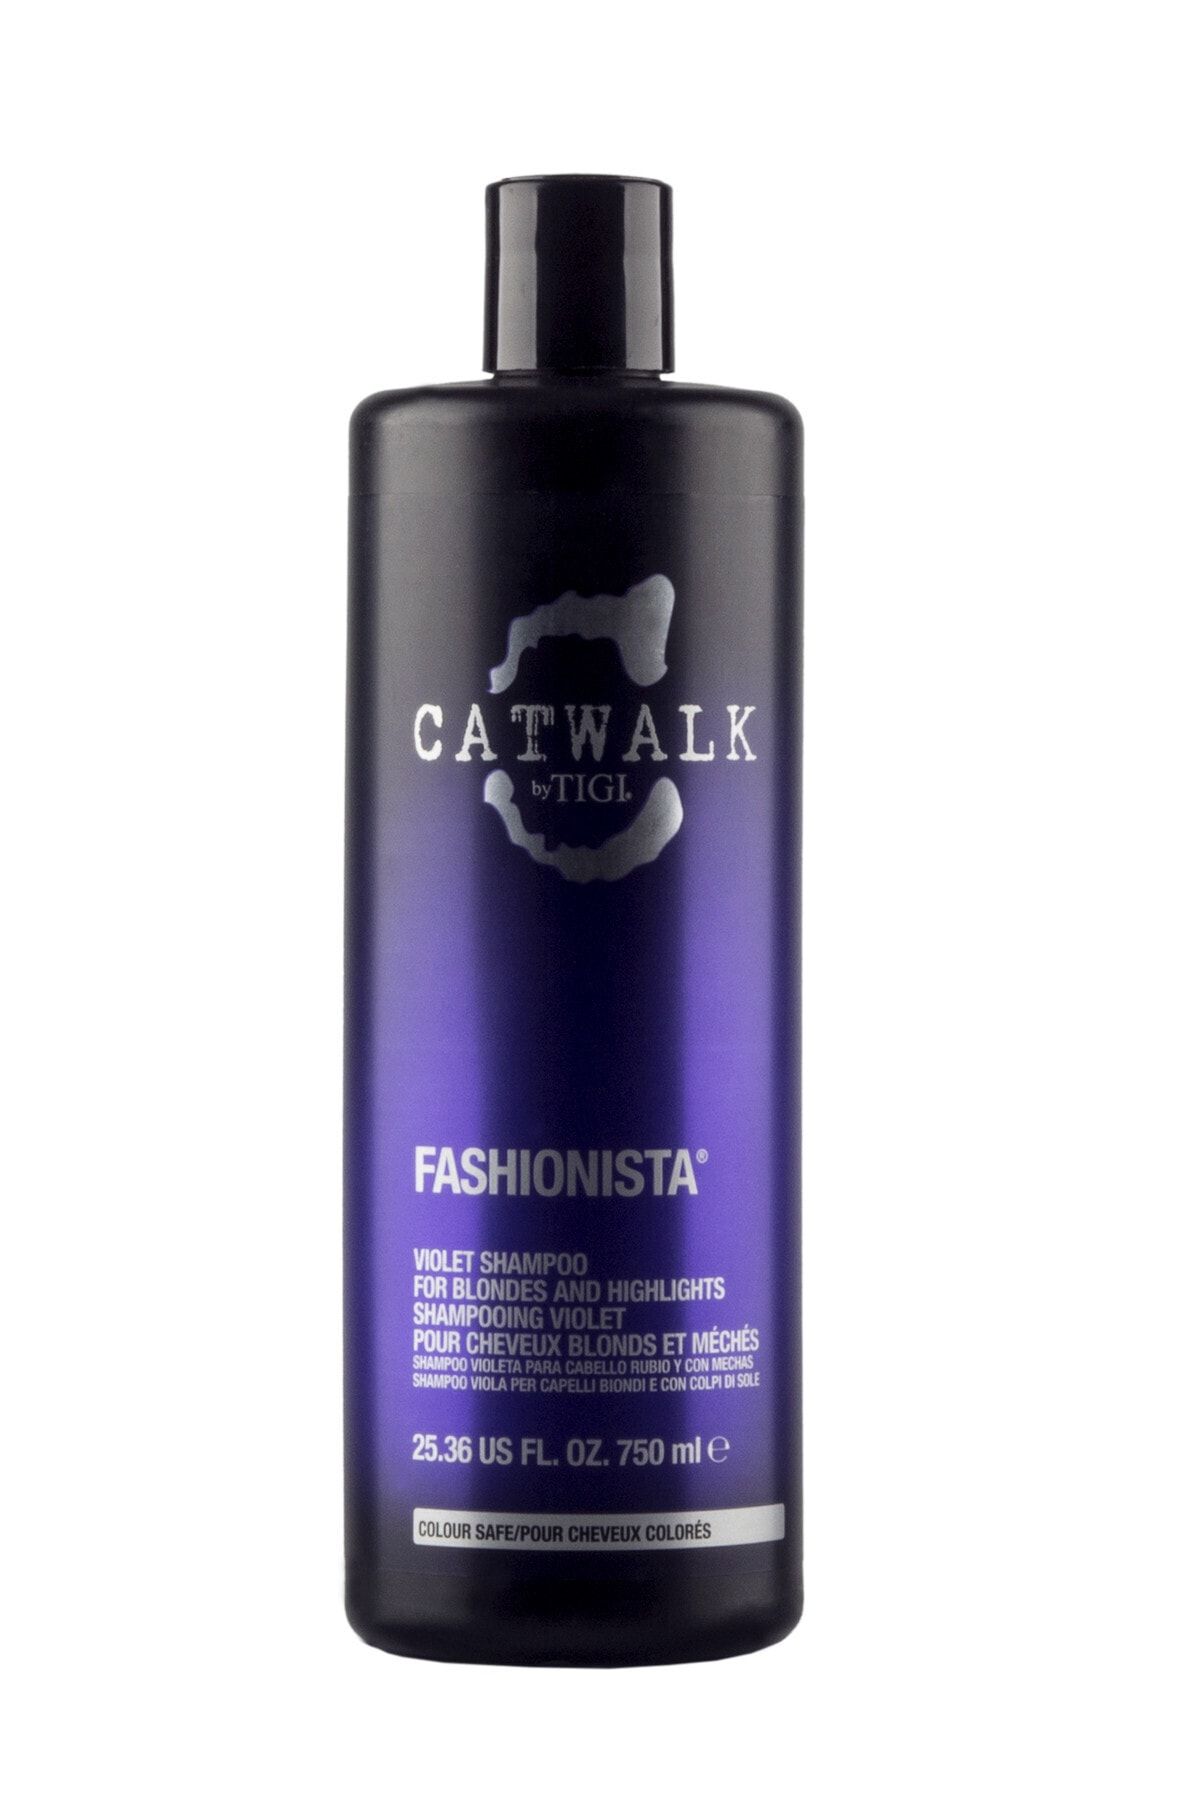 Tigi Catwalk Sarı Saçlar ve Röfleler için Renk Koruyucu Sülfatsız Mor Şampuan 750 ml - Fashionista 615908426847